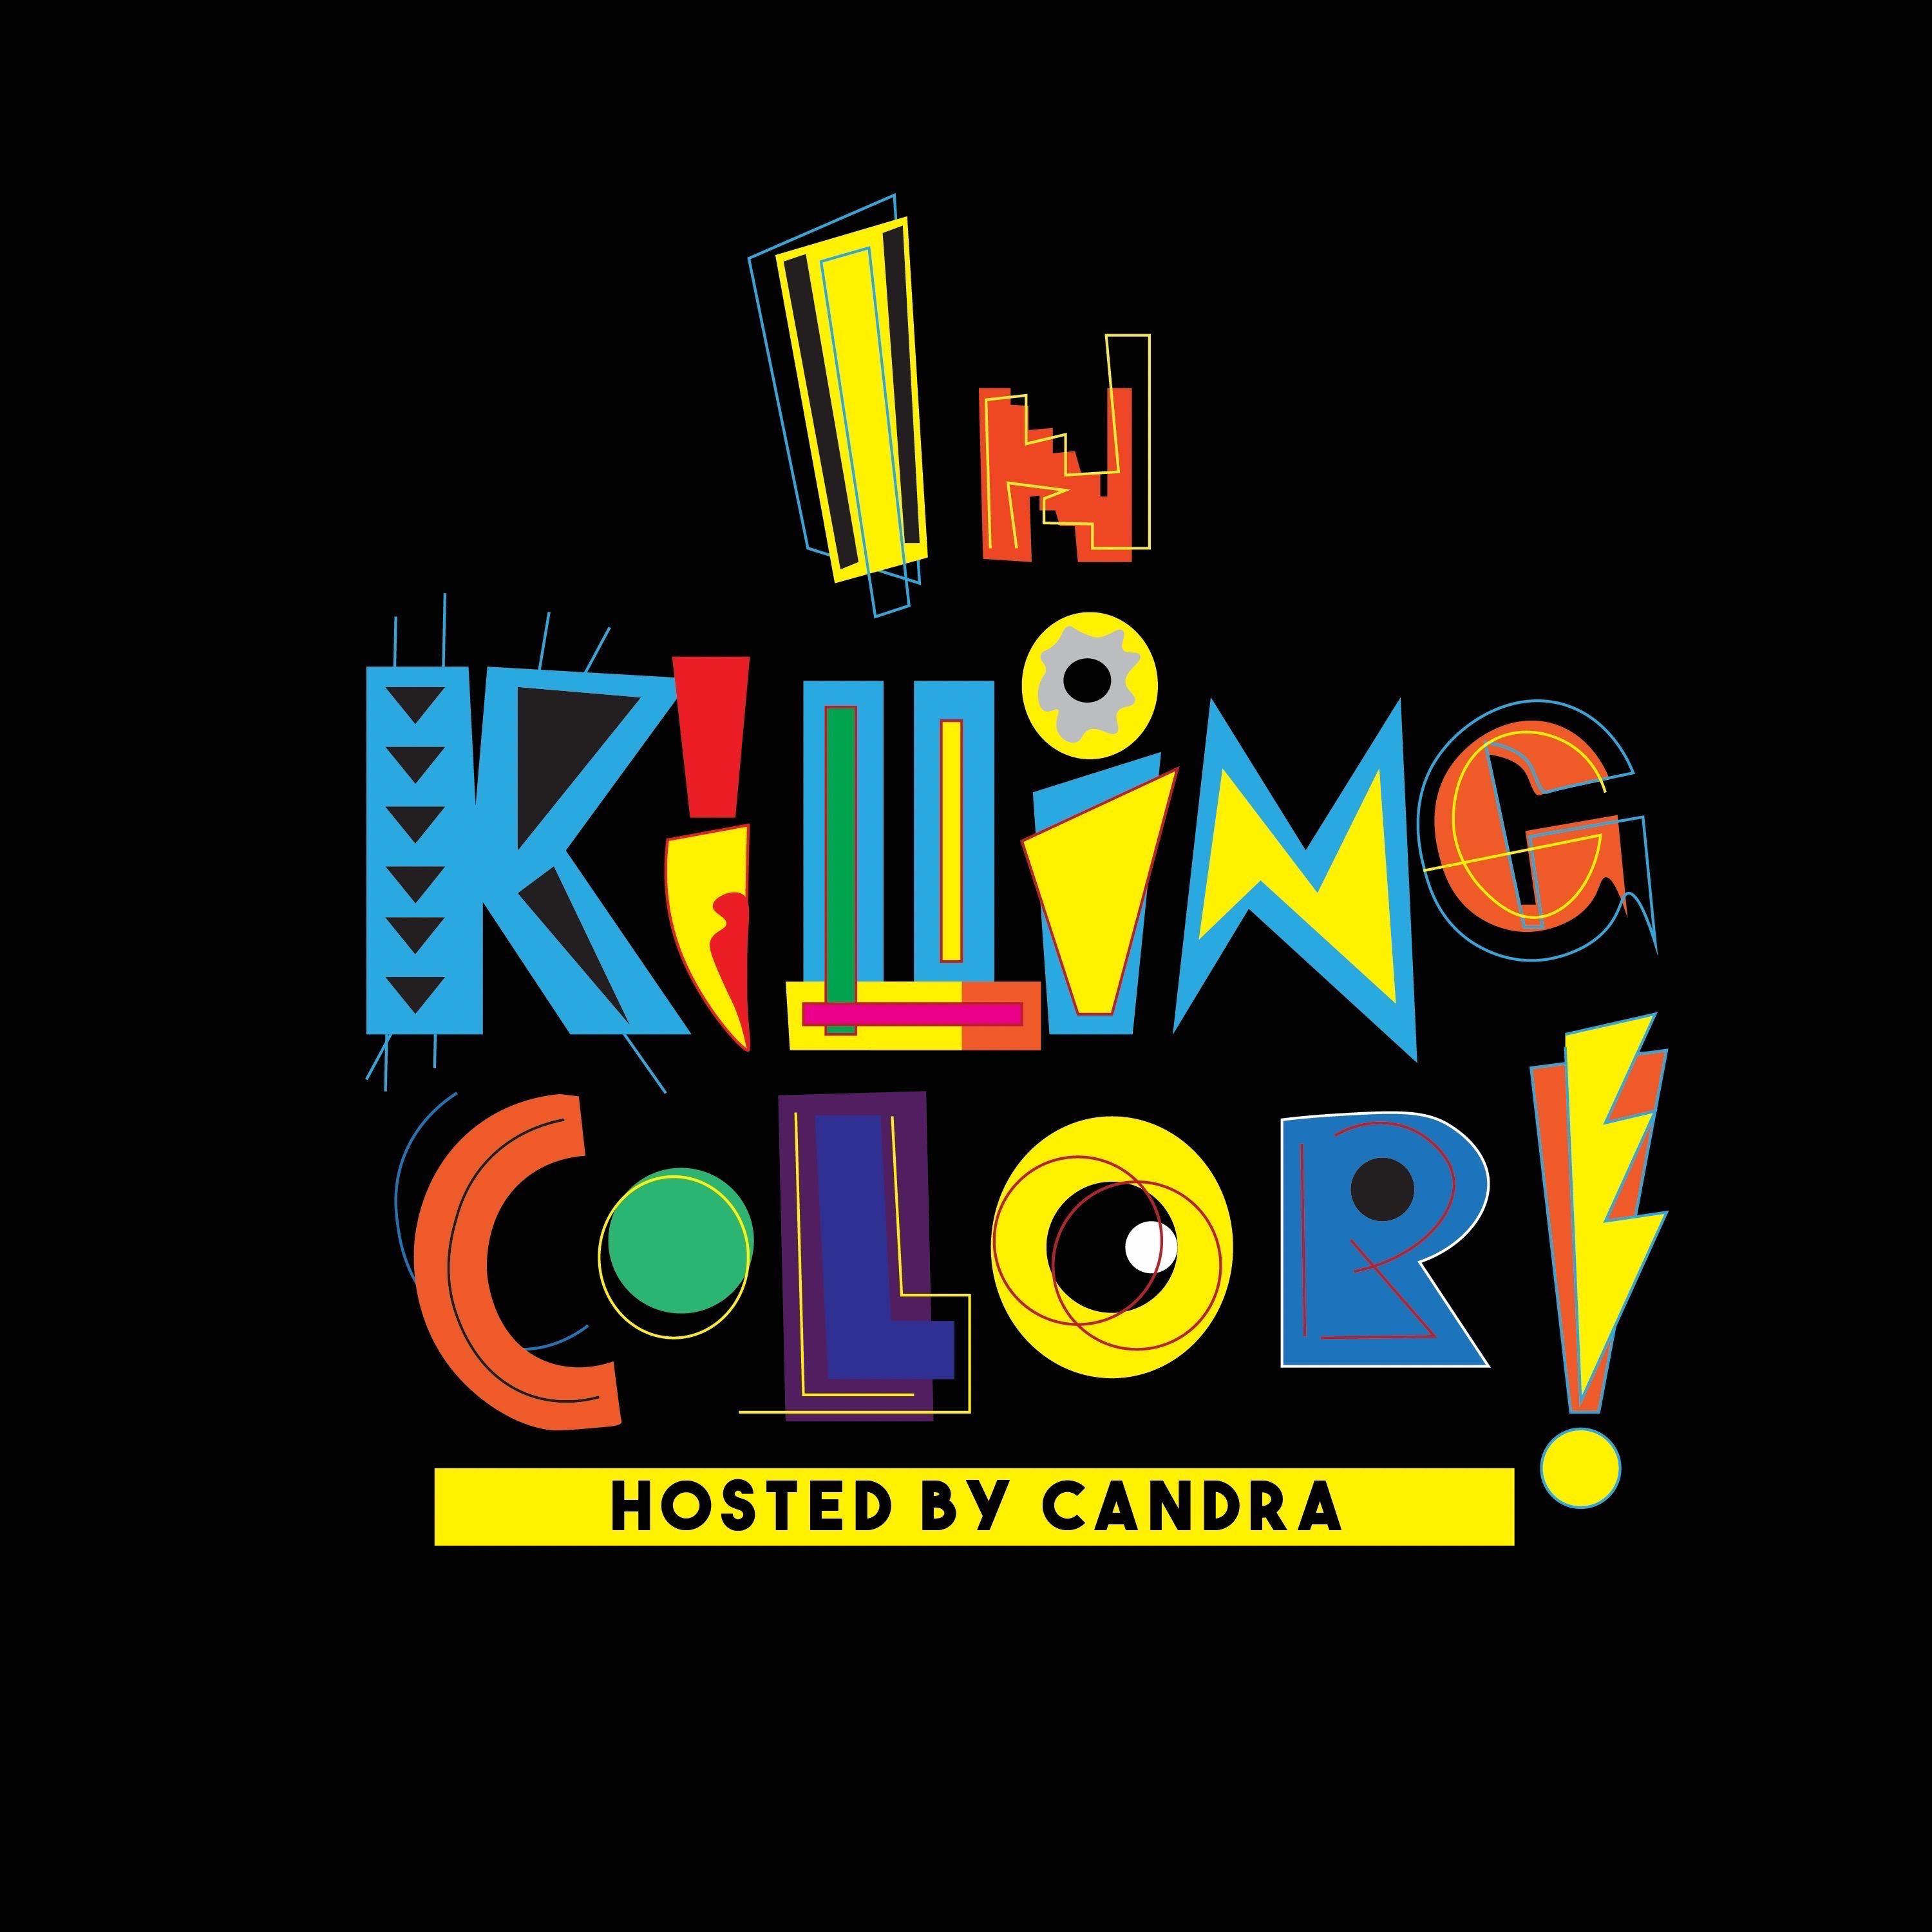 In Killing Color